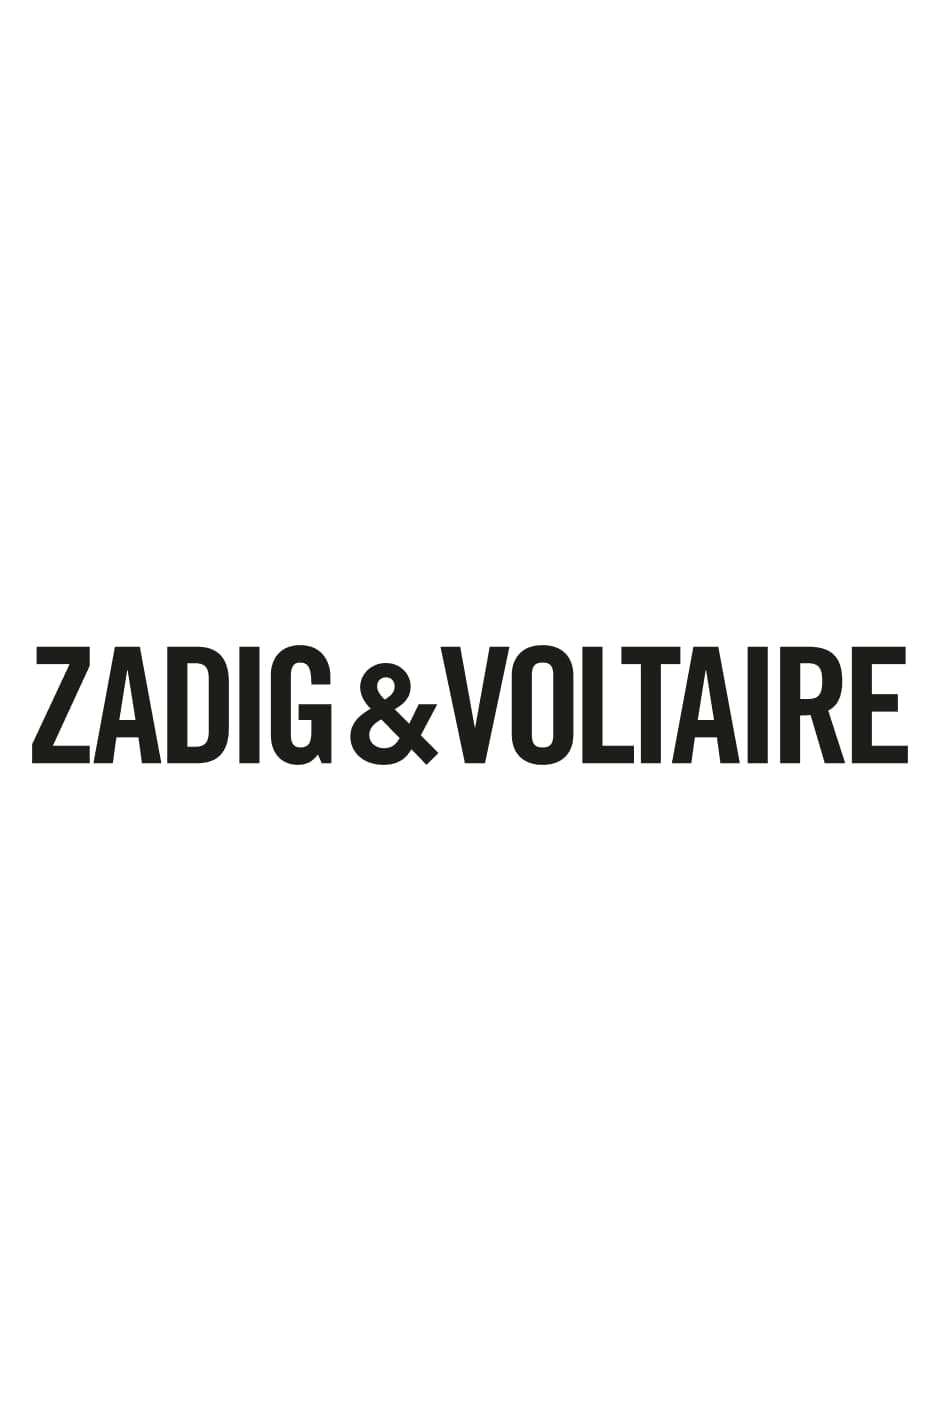 Livre Zadig&Voltaire: Established 1997 in Paris - Version Française La première monographie sur la marque Zadig&Voltaire publiée à l'occasion de son 25ème anniversaire - Version Française.